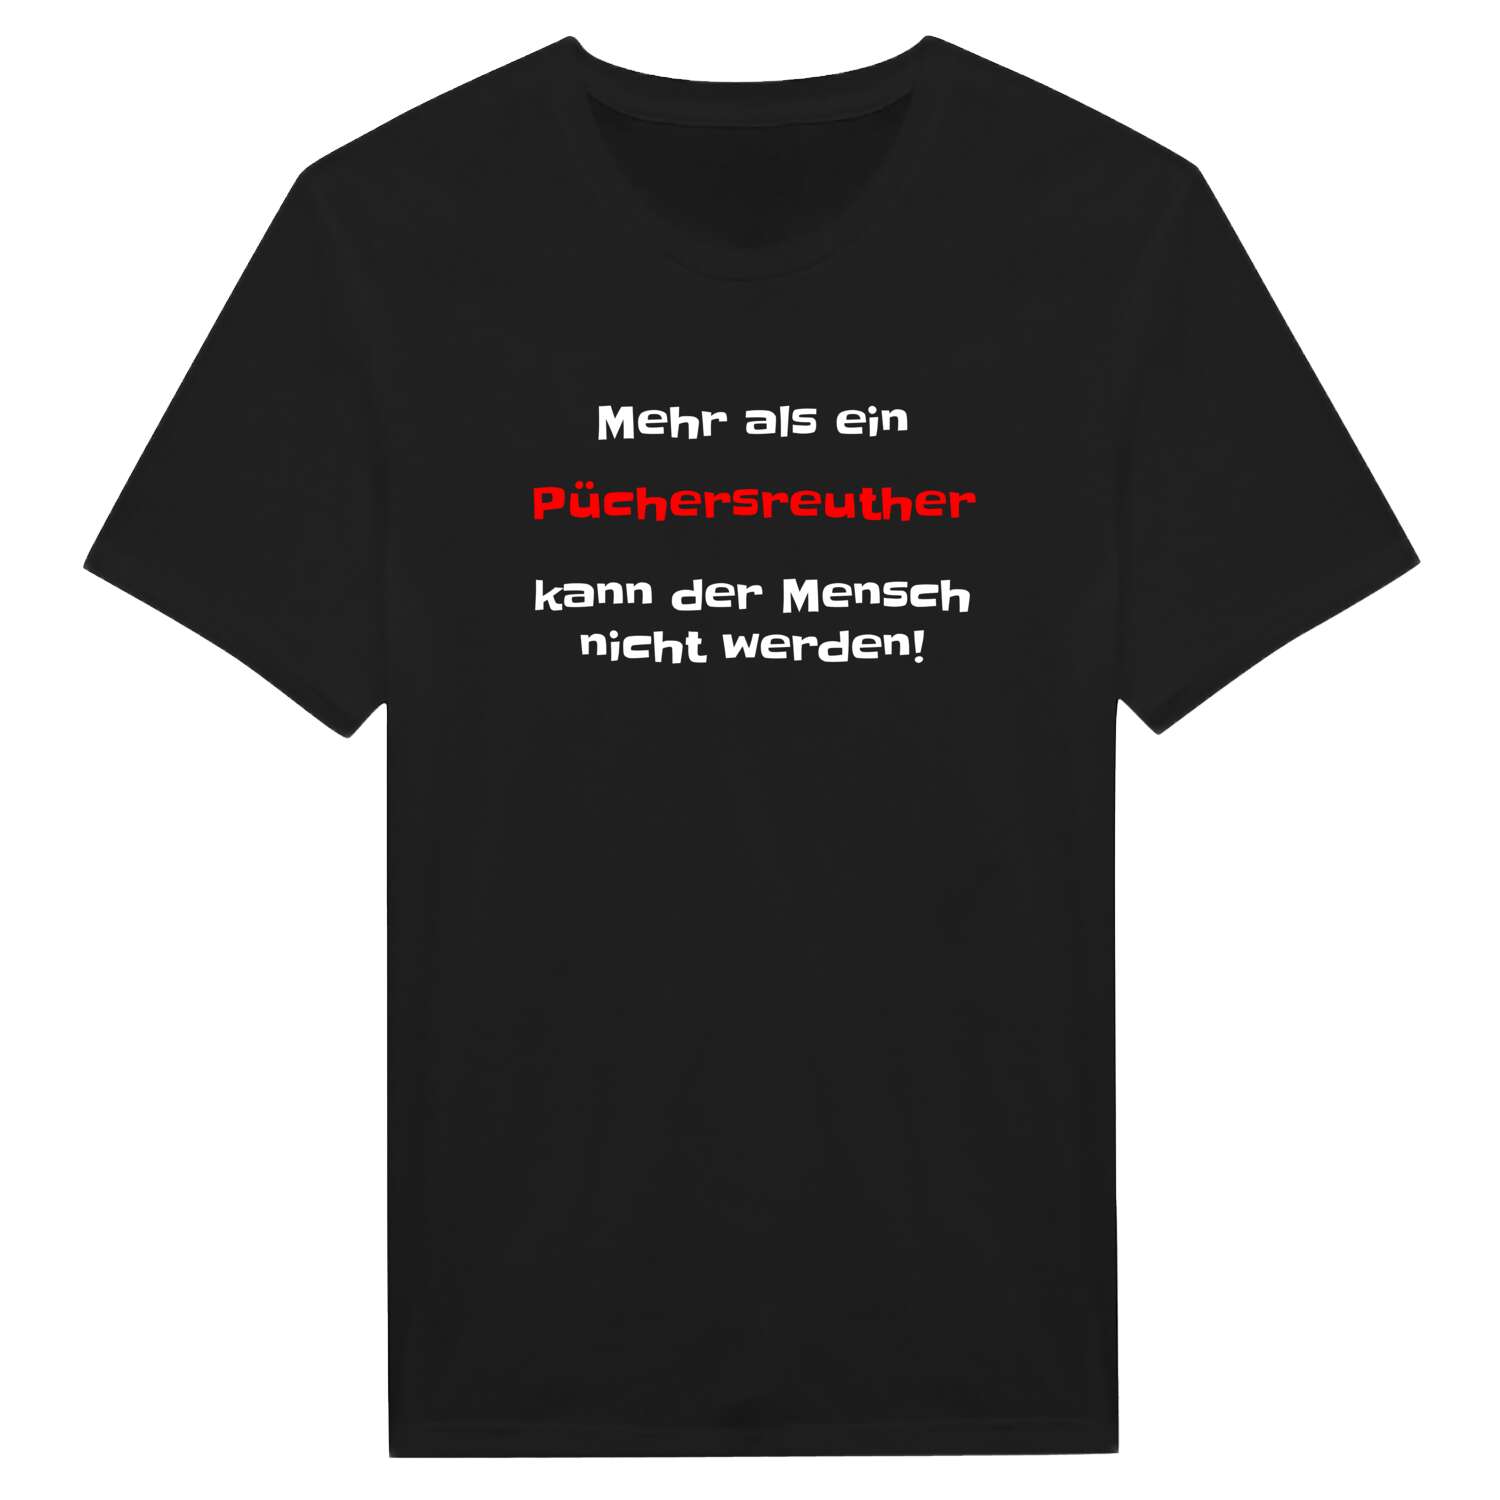 Püchersreuth T-Shirt »Mehr als ein«